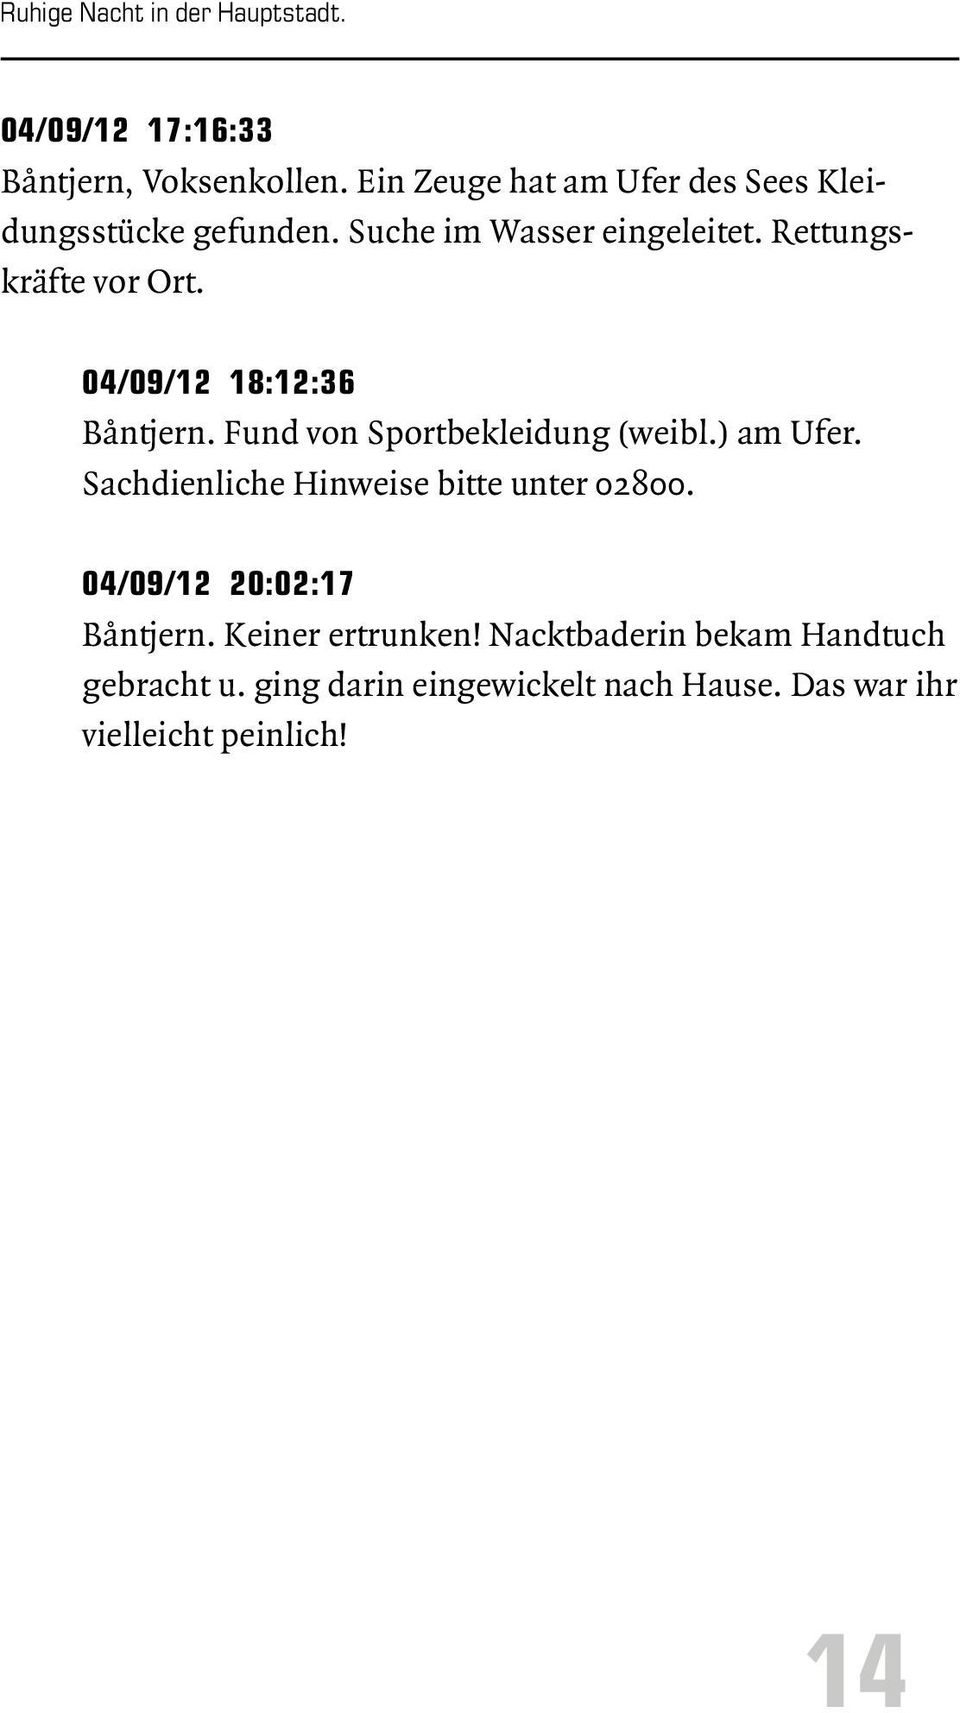 04/09/12 18:12:36 Båntjern. Fund von Sportbekleidung (weibl.) am Ufer. Sachdienliche Hinweise bitte unter 02800.